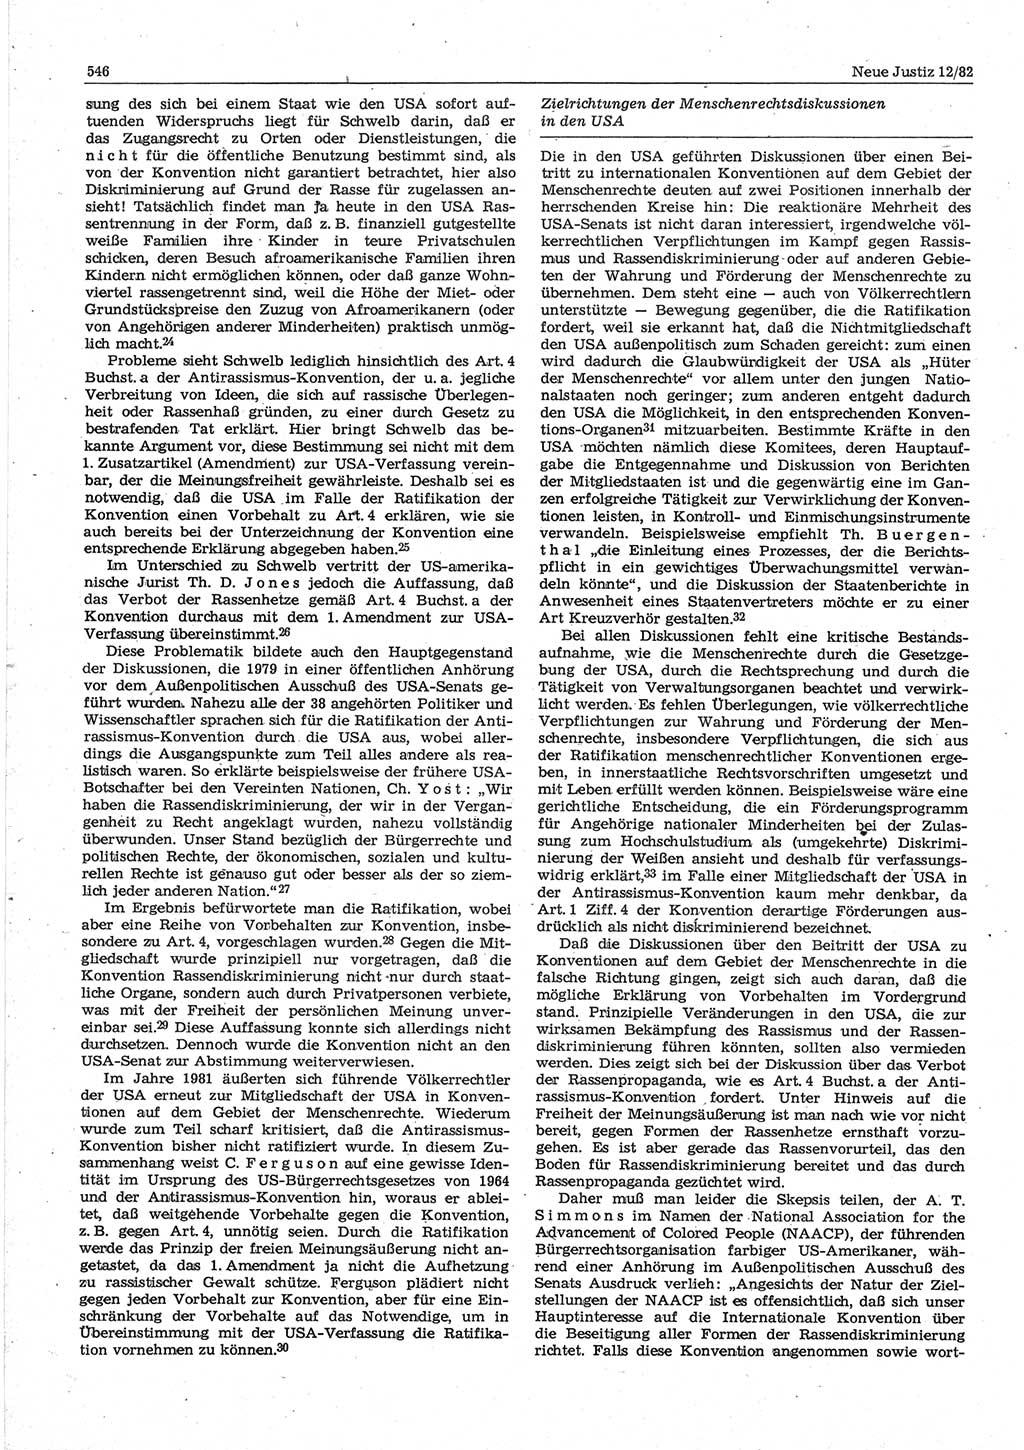 Neue Justiz (NJ), Zeitschrift für sozialistisches Recht und Gesetzlichkeit [Deutsche Demokratische Republik (DDR)], 36. Jahrgang 1982, Seite 546 (NJ DDR 1982, S. 546)